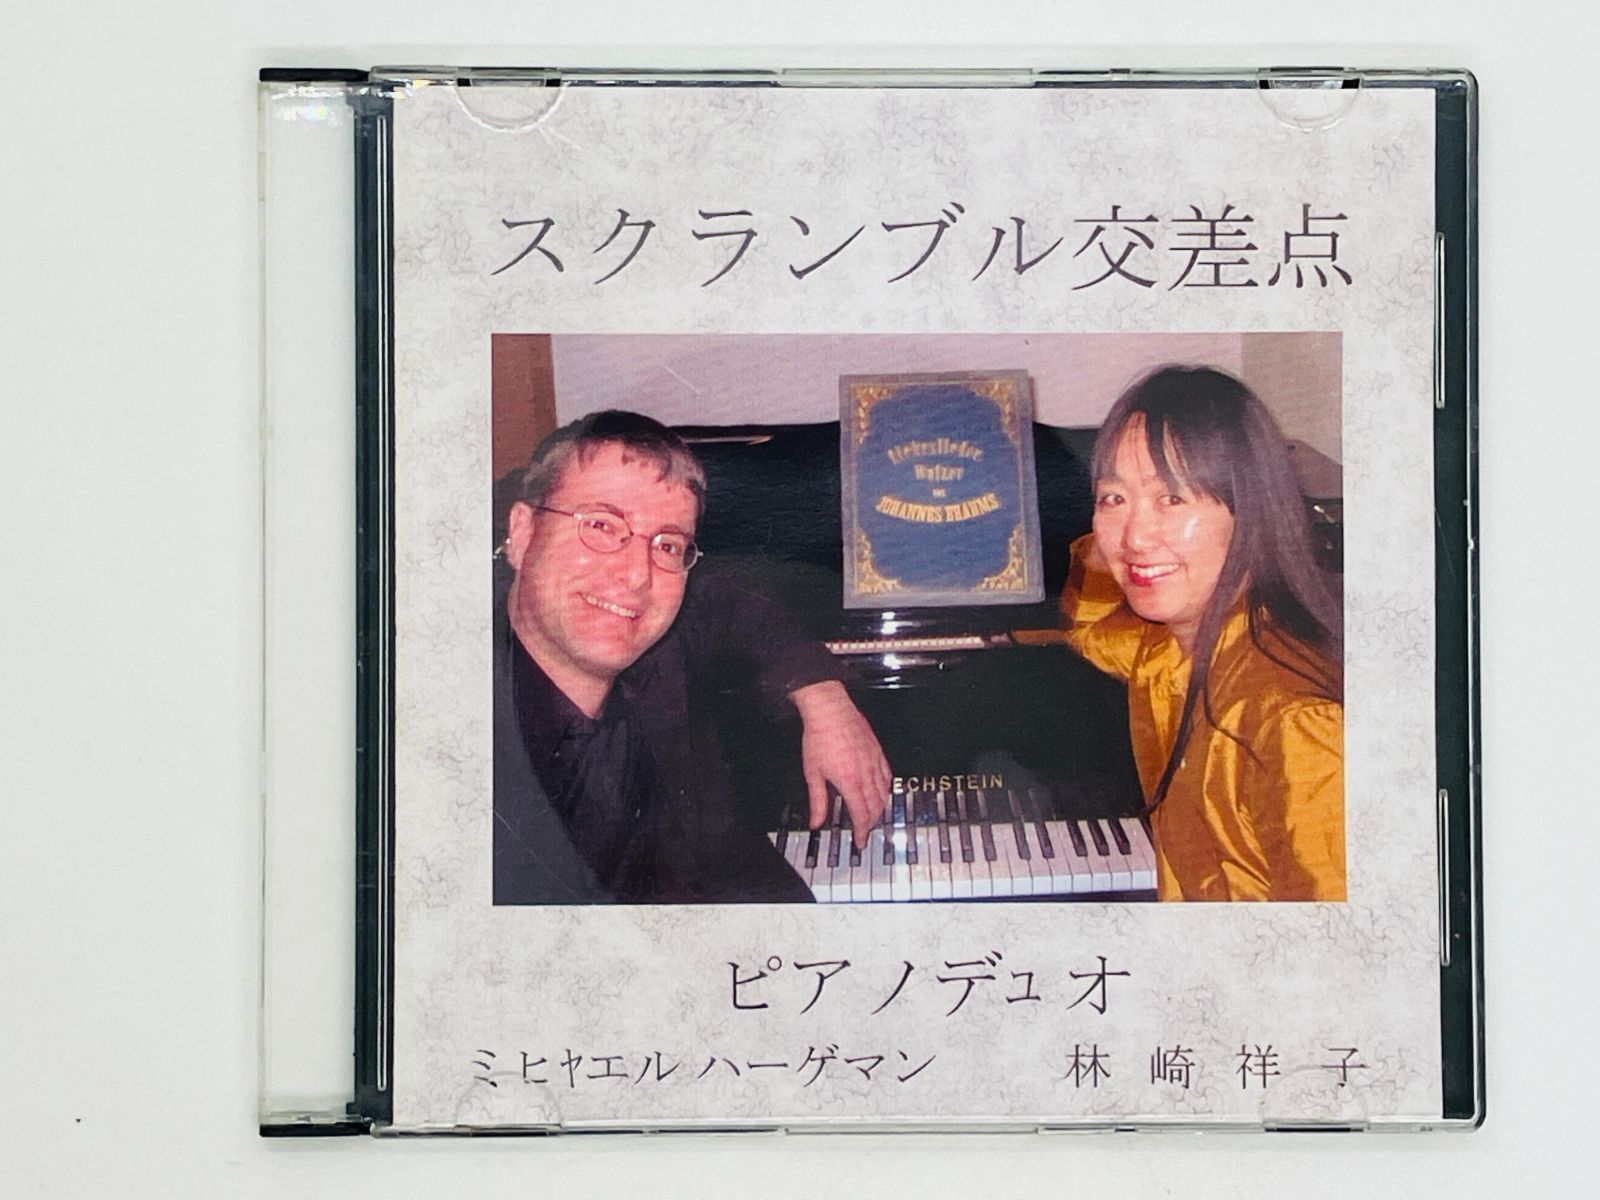 CD-R 自主製作盤 スクランブル交差点 ピアノデュオ 林崎祥子 ミヒヤエル・ハーゲマン N02 - メルカリ